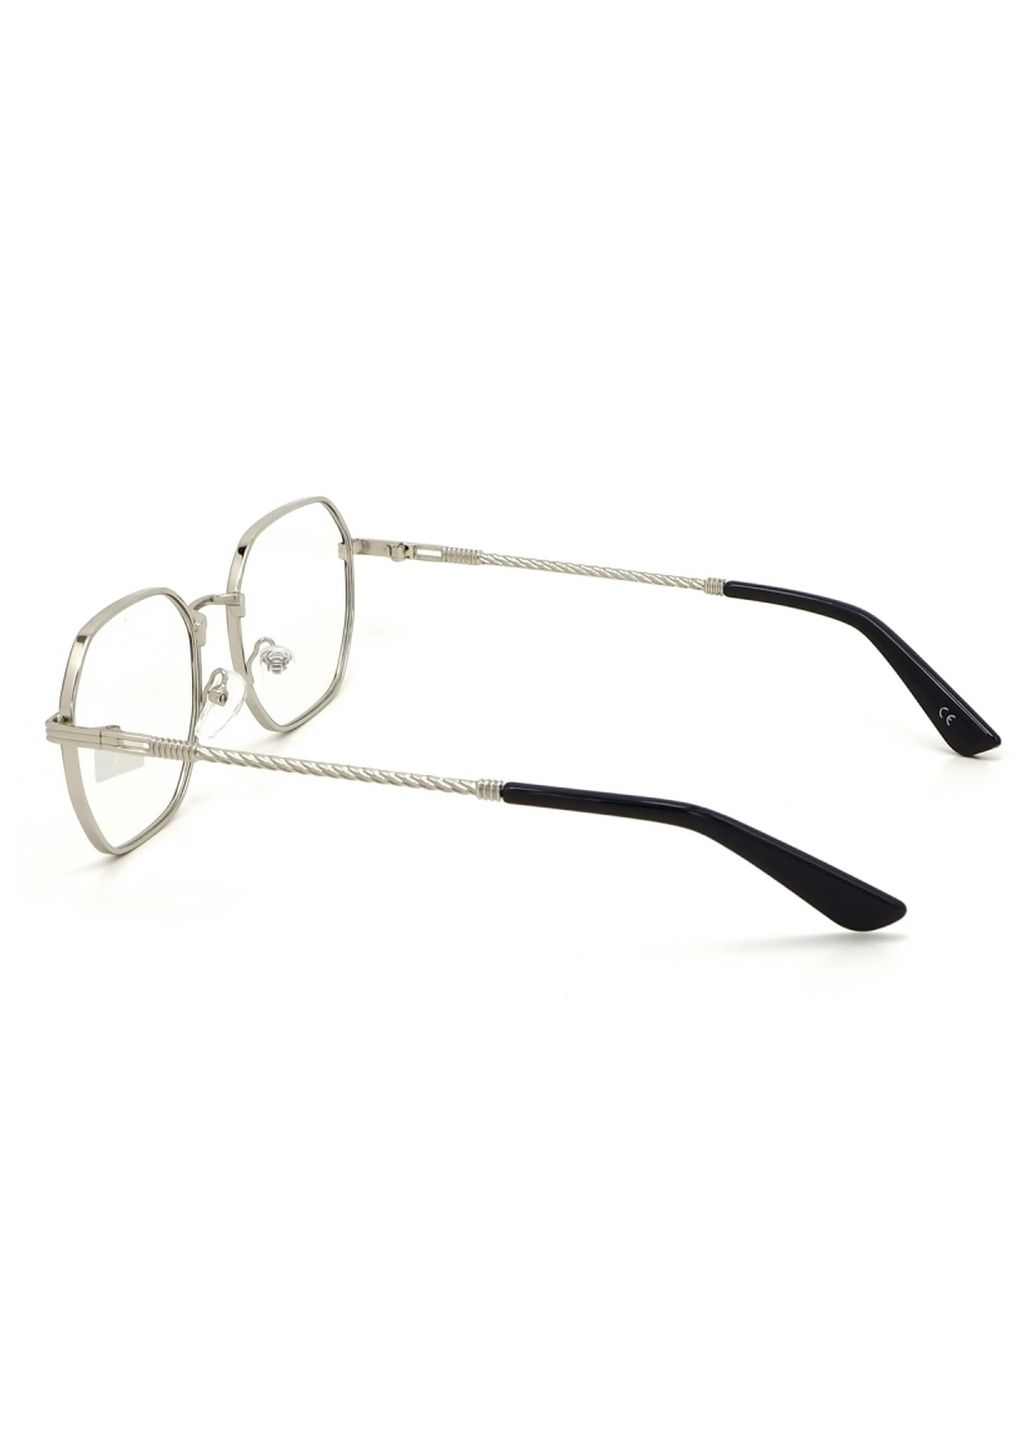 Купить Очки для работы за компьютером Cooper Glasses в серебристой оправе 124012 в интернет-магазине